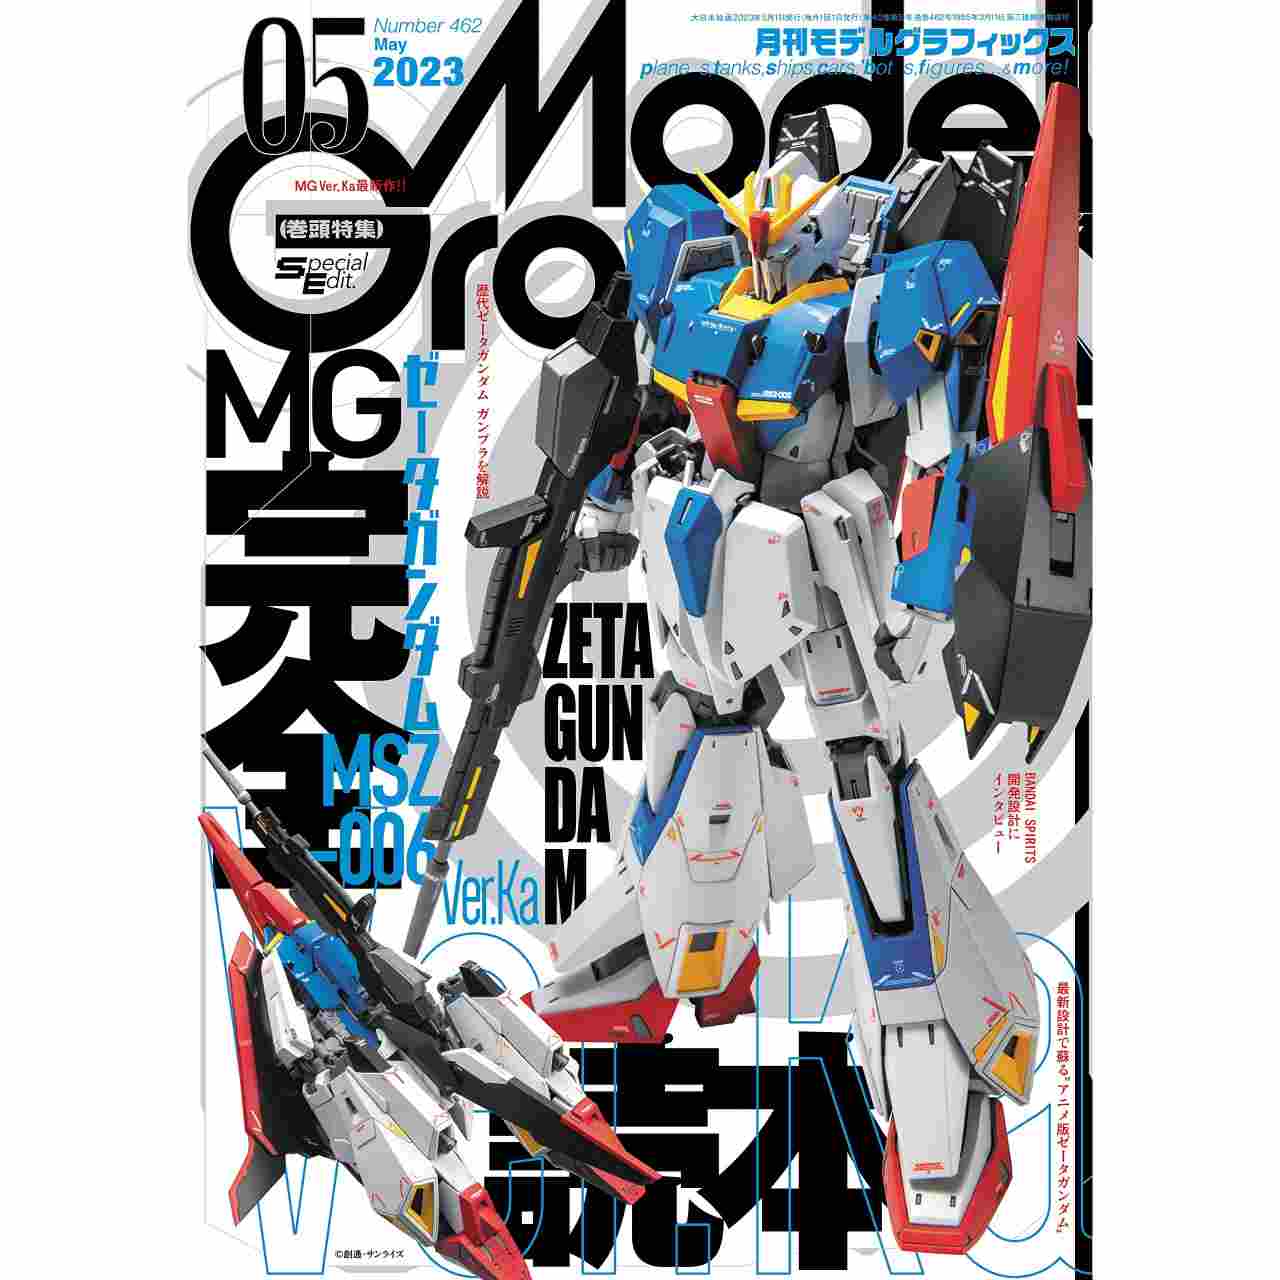 【新製品】[4910187470533] モデルグラフィックス Vol.342 2013年5月号)「GP500」熱狂時代、再来!